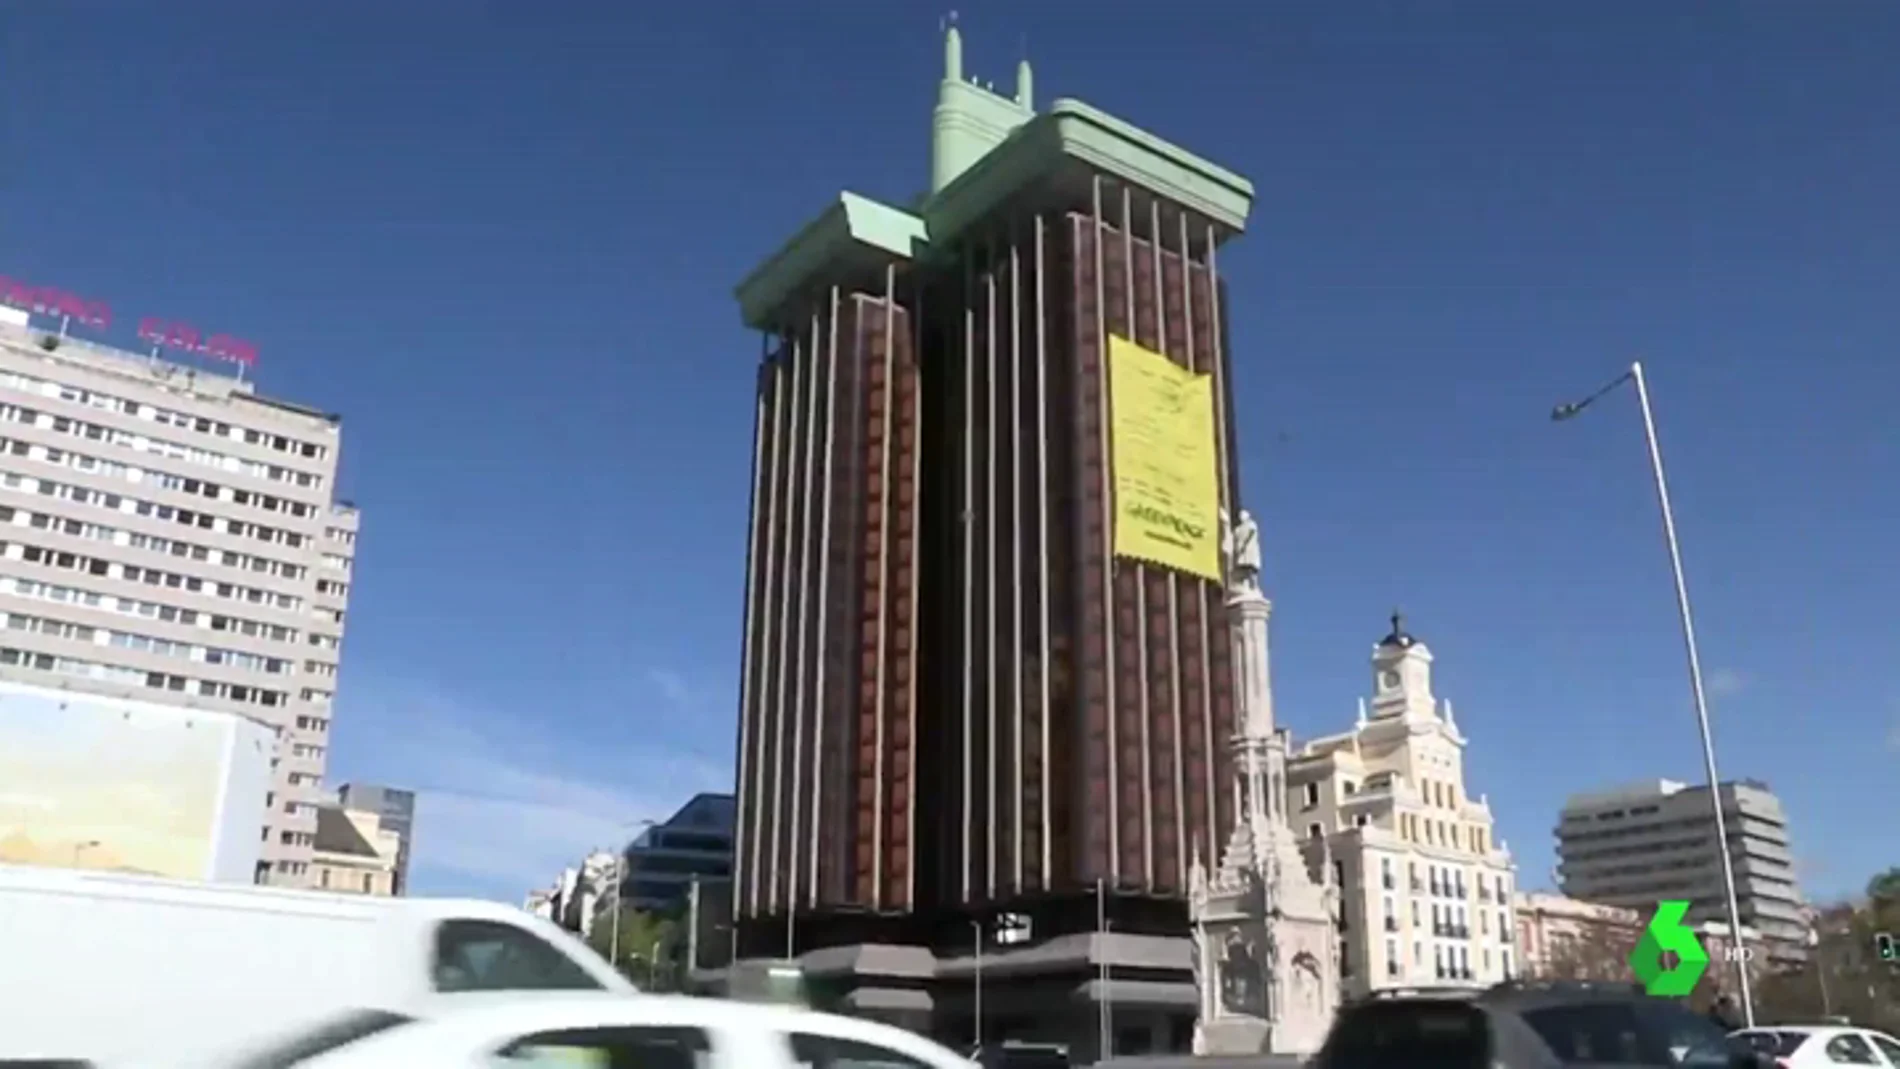 Greenpeace despliega una enorme pancarta en Madrid para exigir acciones políticas que protejan al medio ambiente